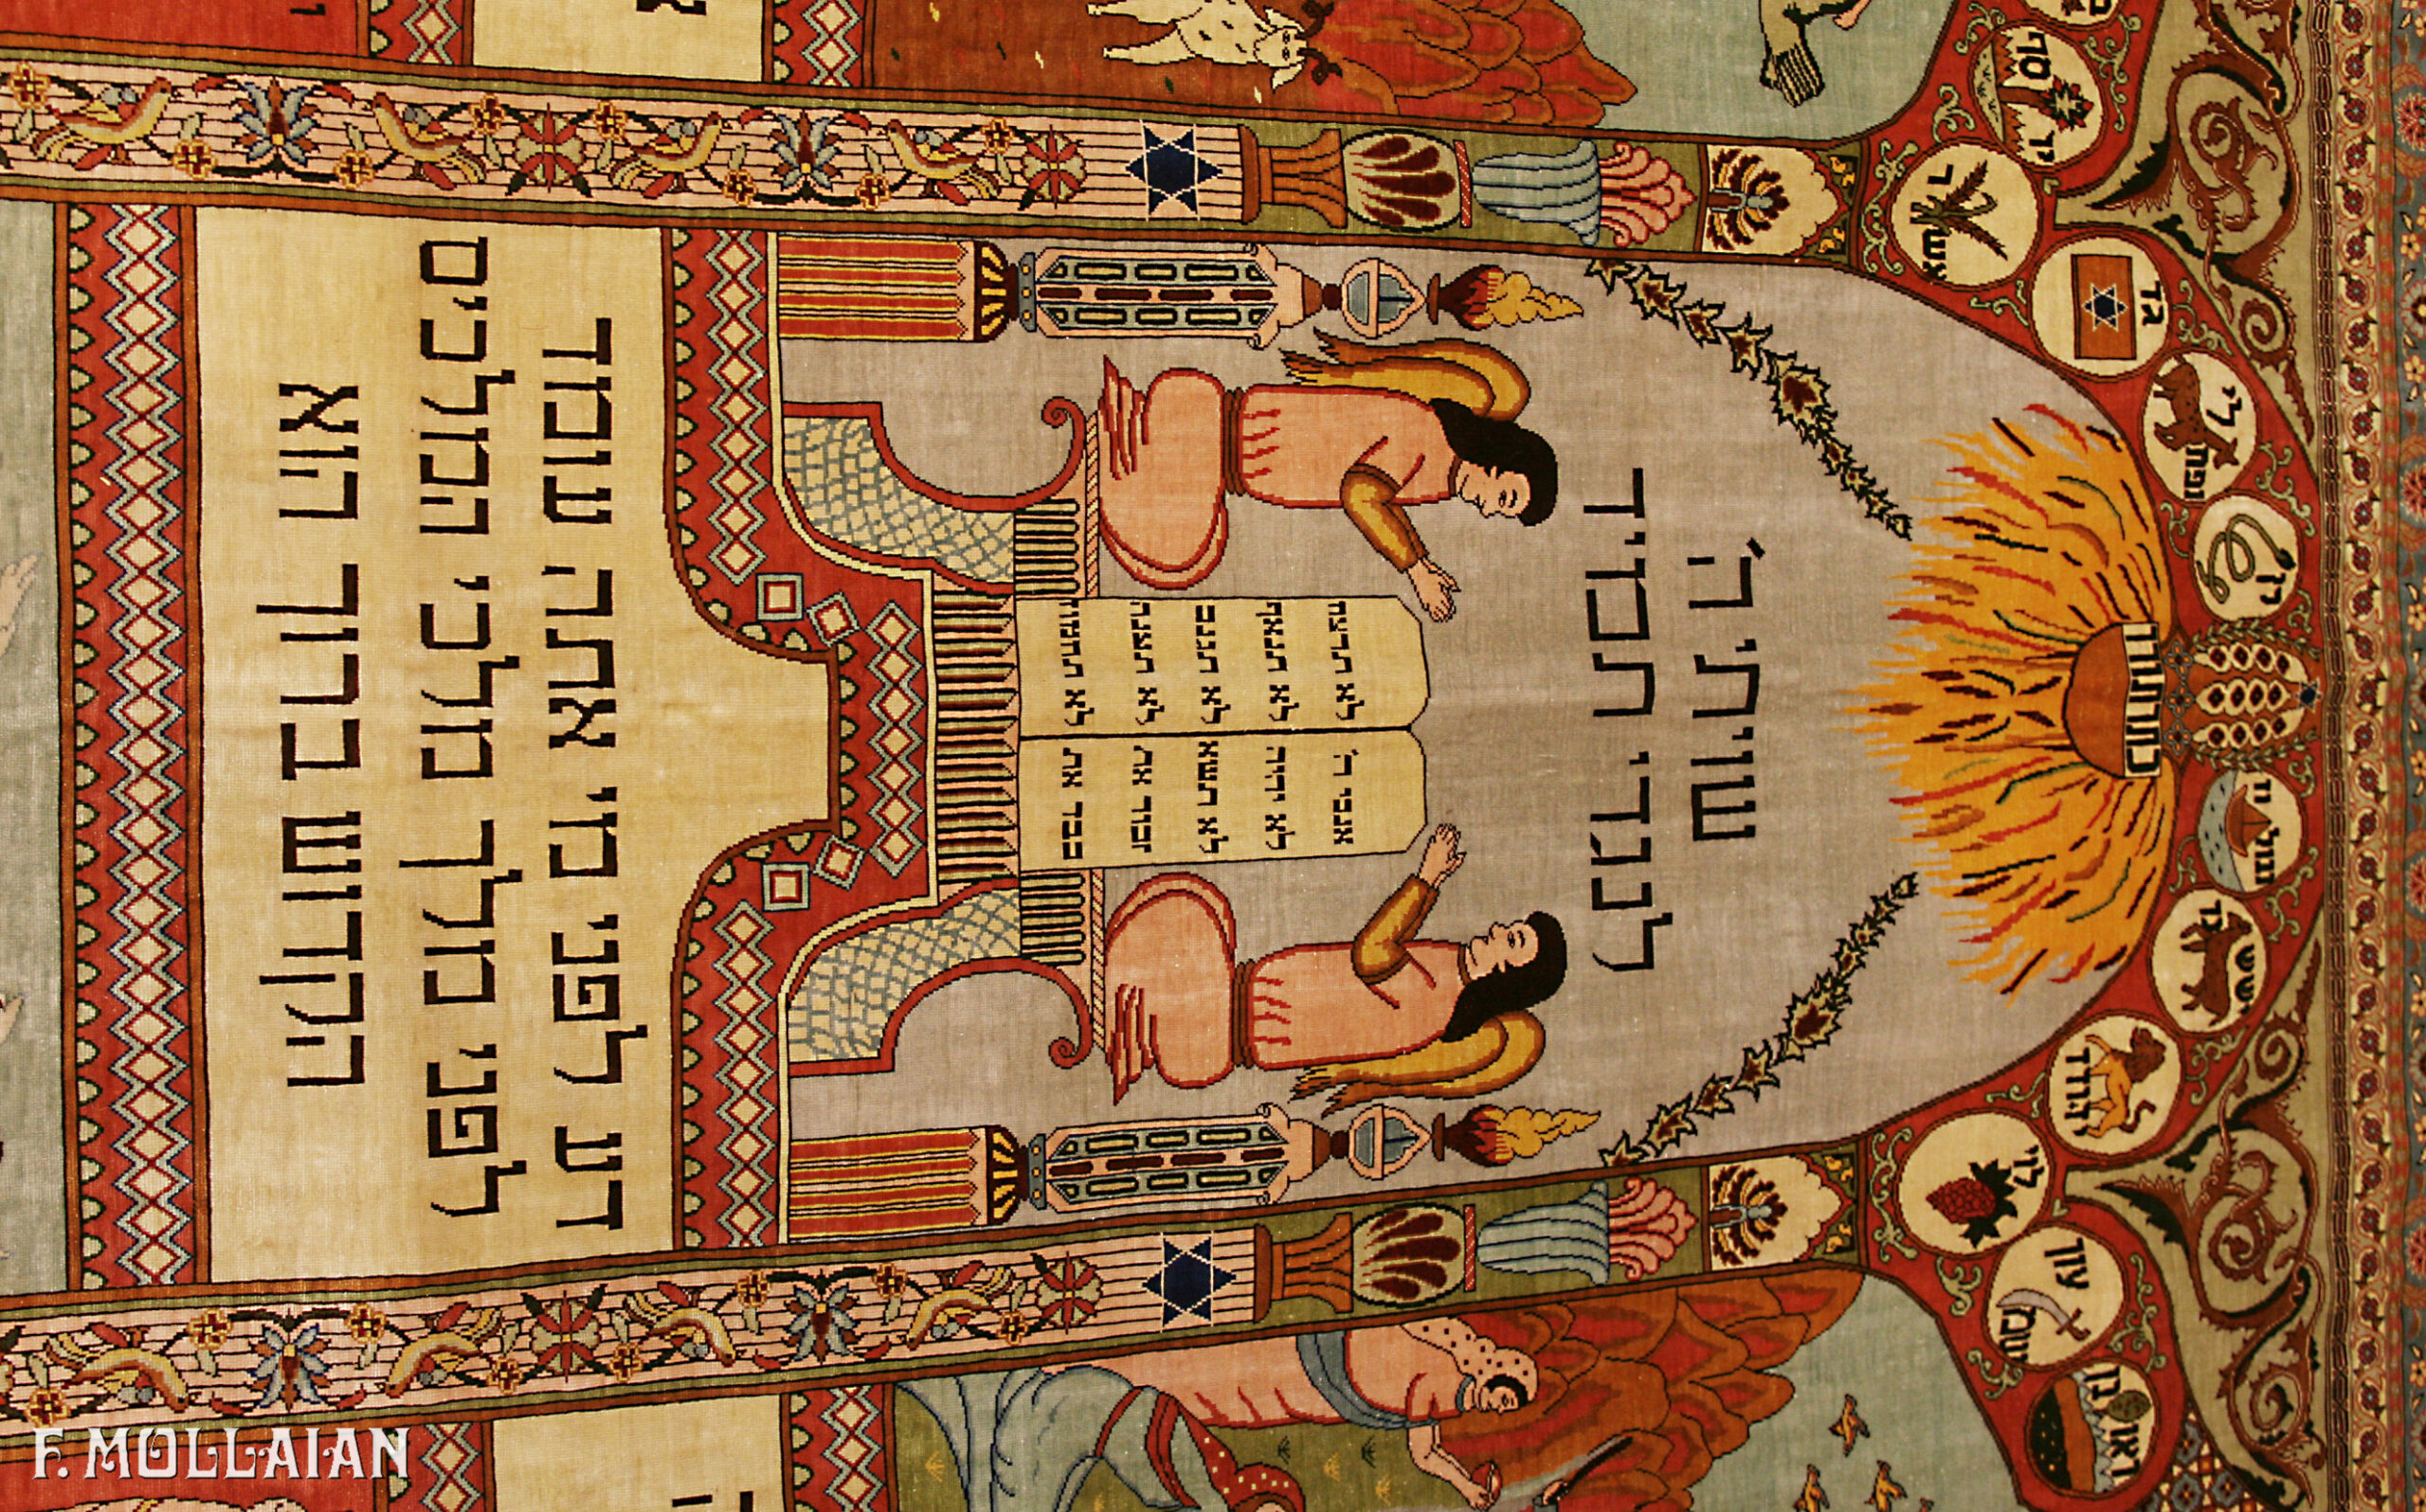 旧 赫雷格地毯 用丝线和金属线织 Ebrei n:57327262